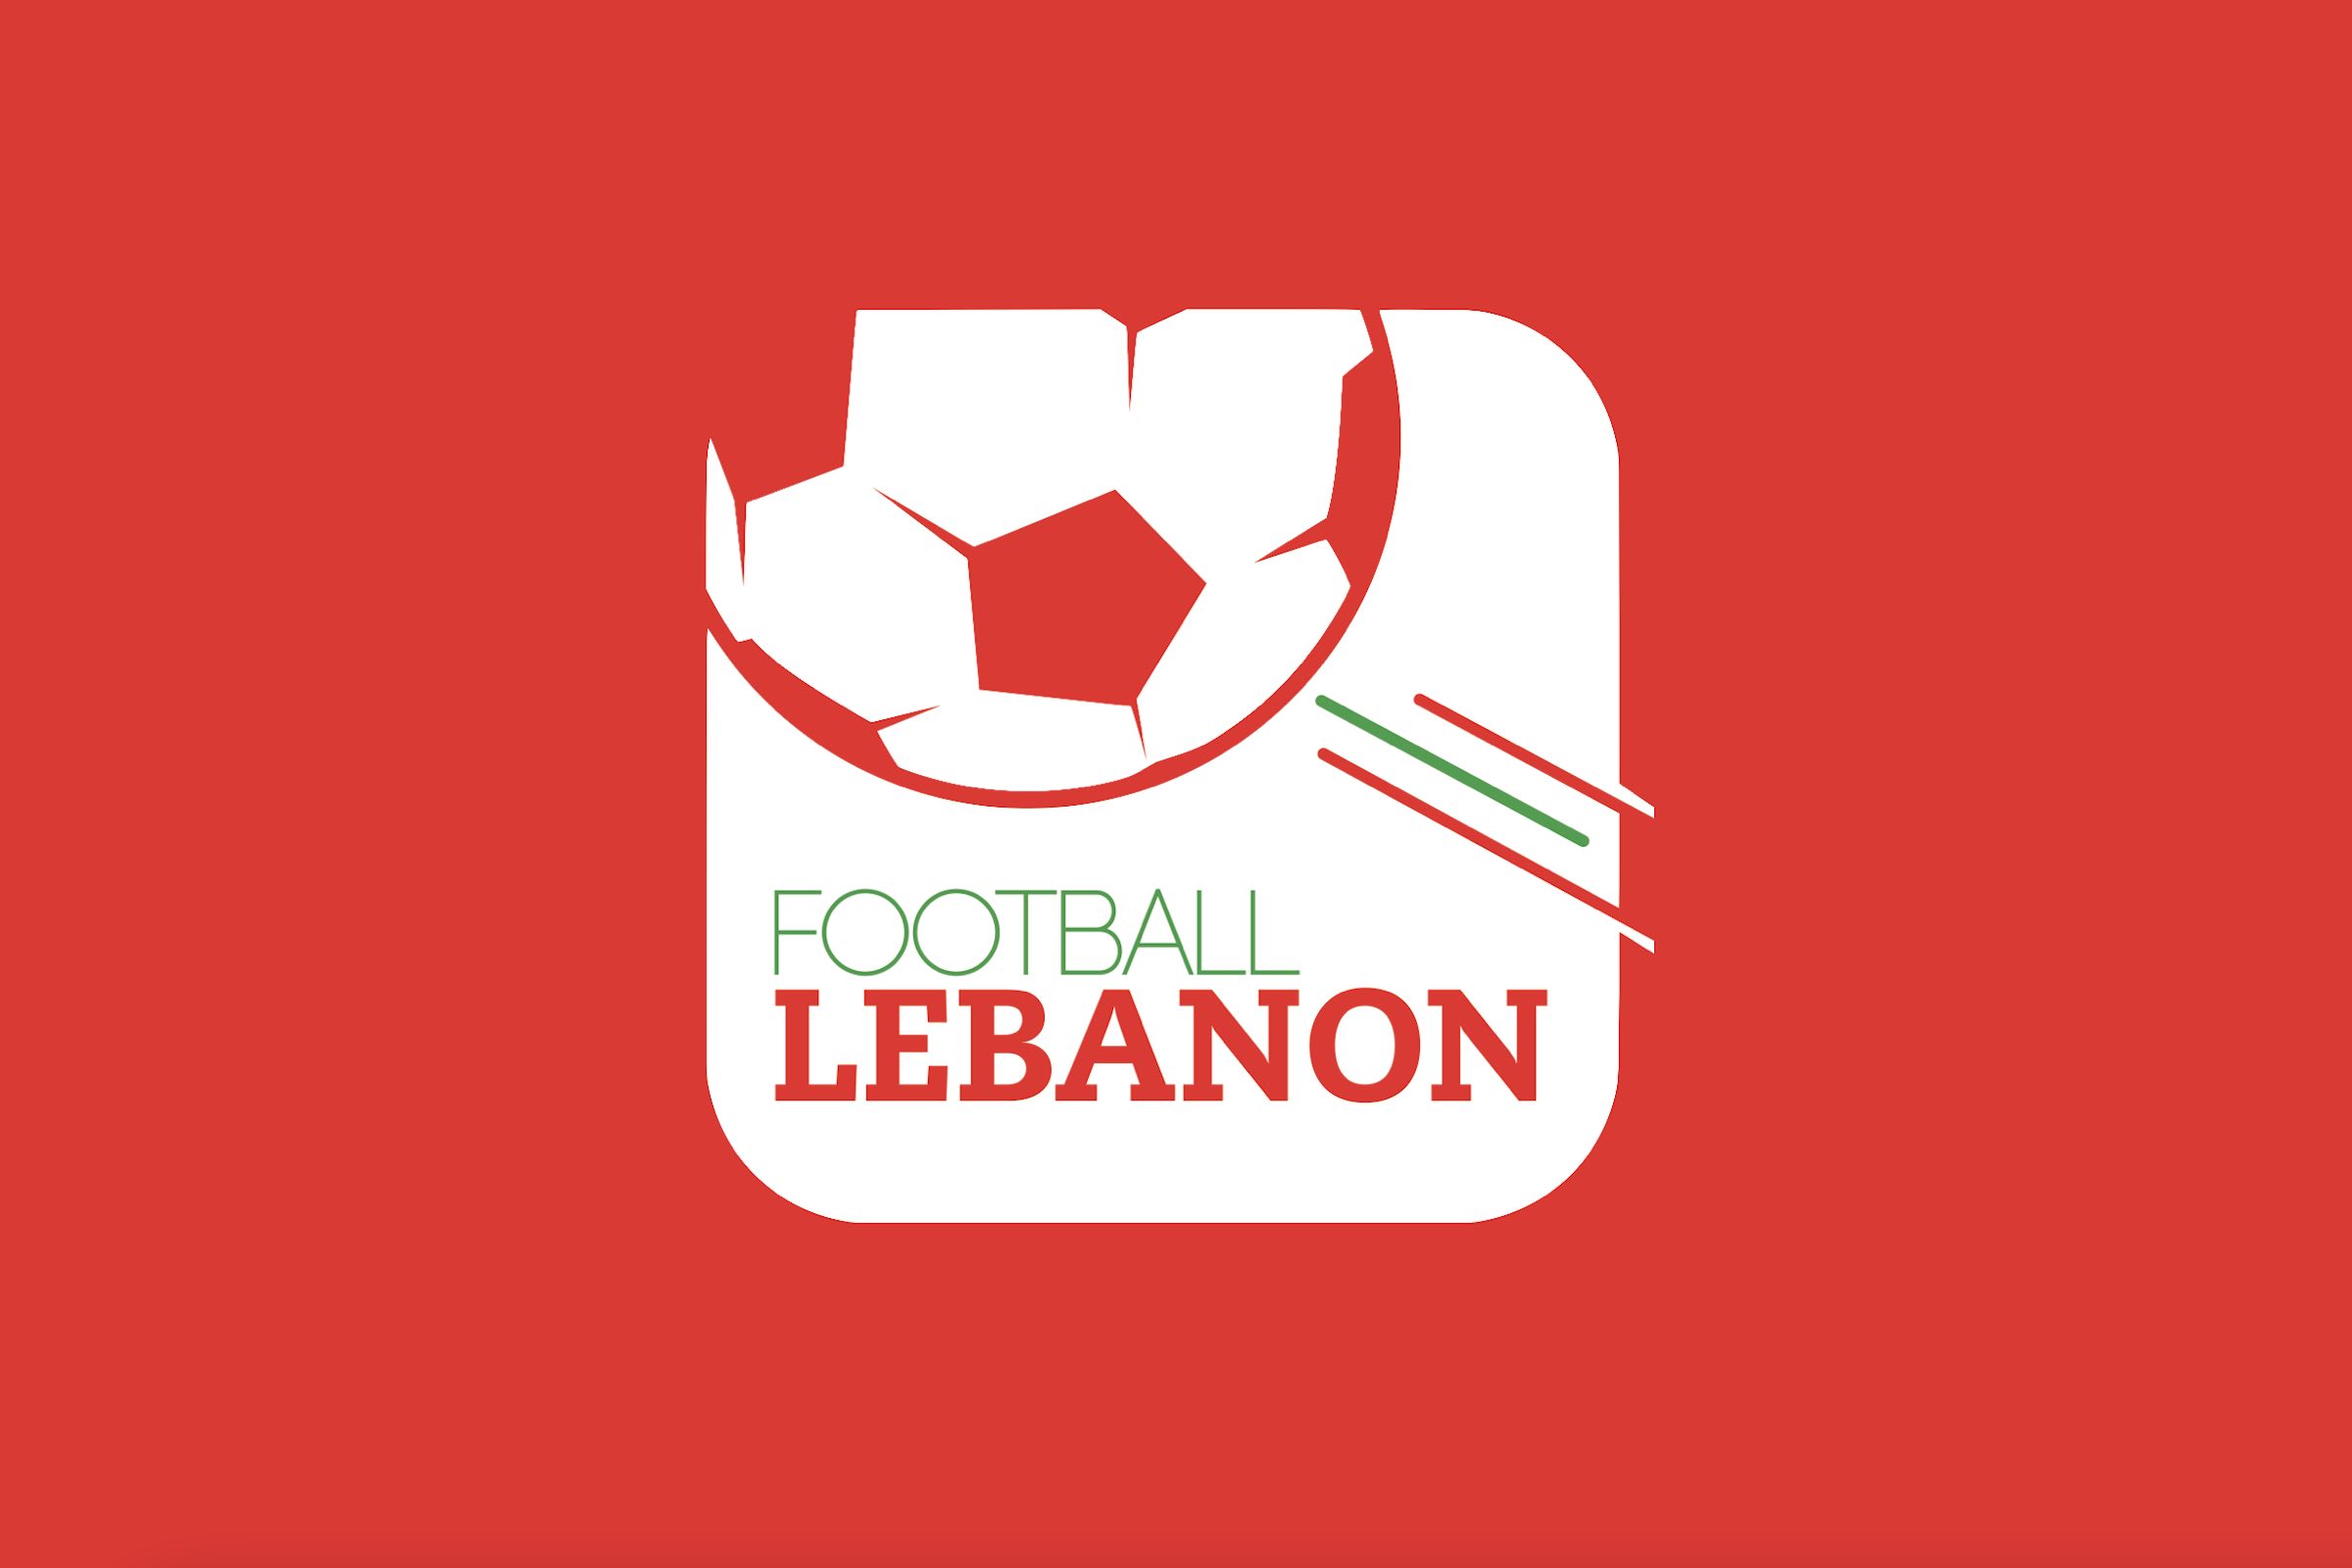 Football Lebanon